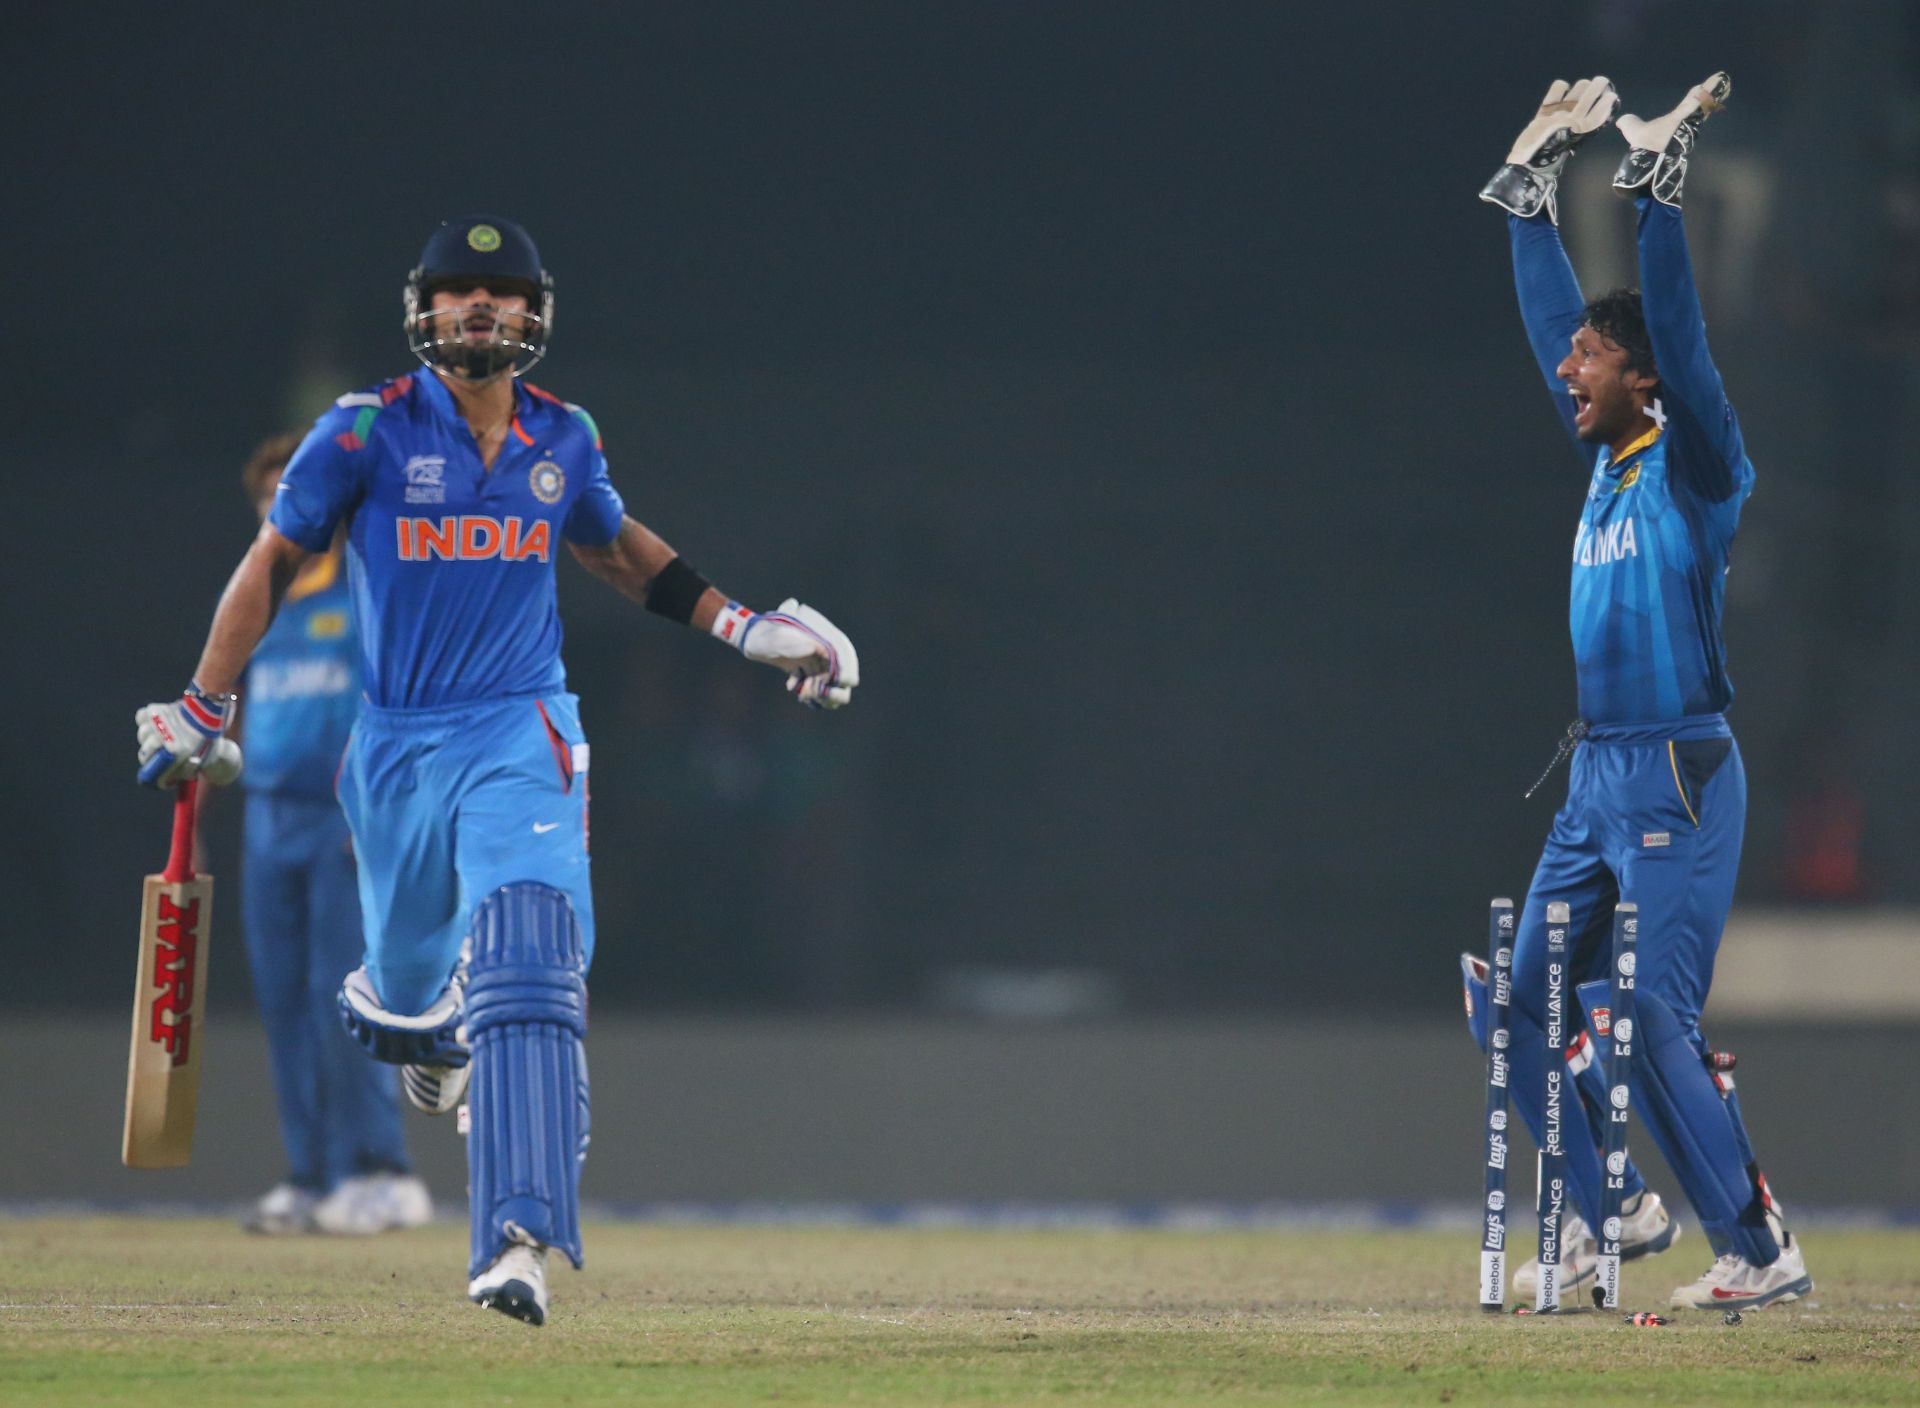 Kohli scored a 58-ball 77 against Sri Lanka in the 2014 World Twenty20 final.